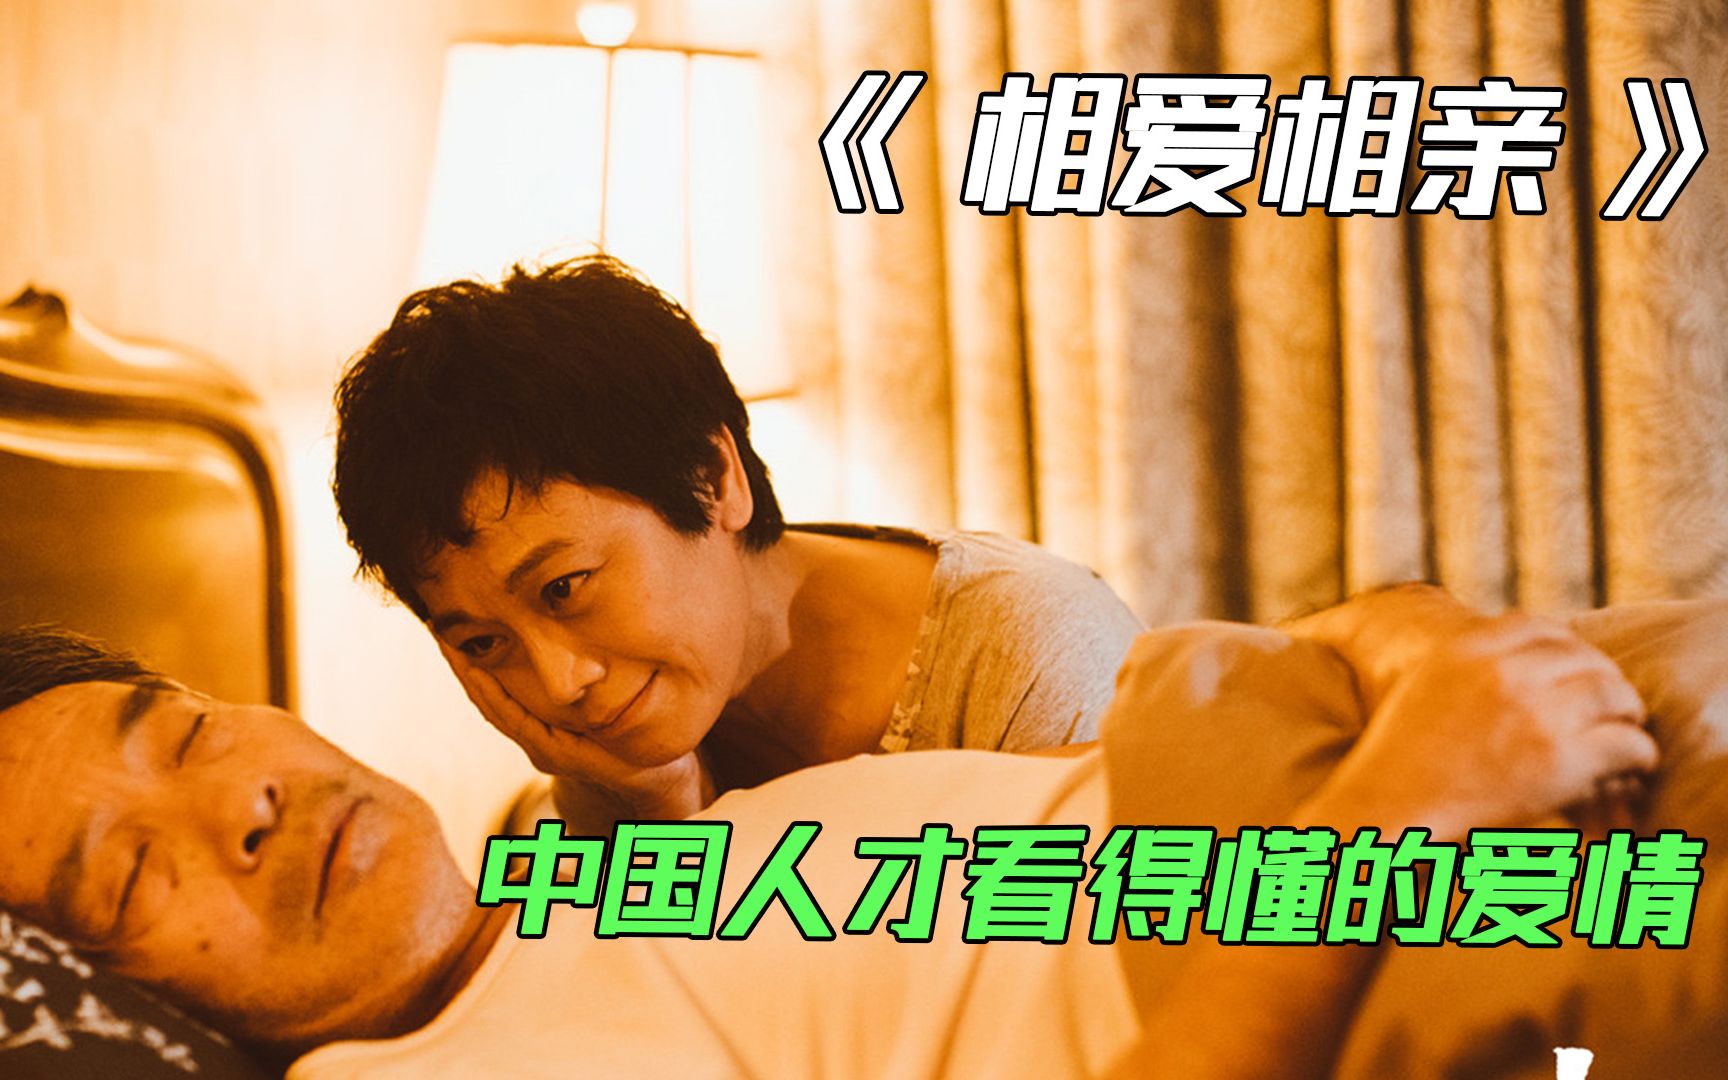 中国人才看得懂的爱情，张艾嘉自导自演的情感大片《相爱相亲》图片